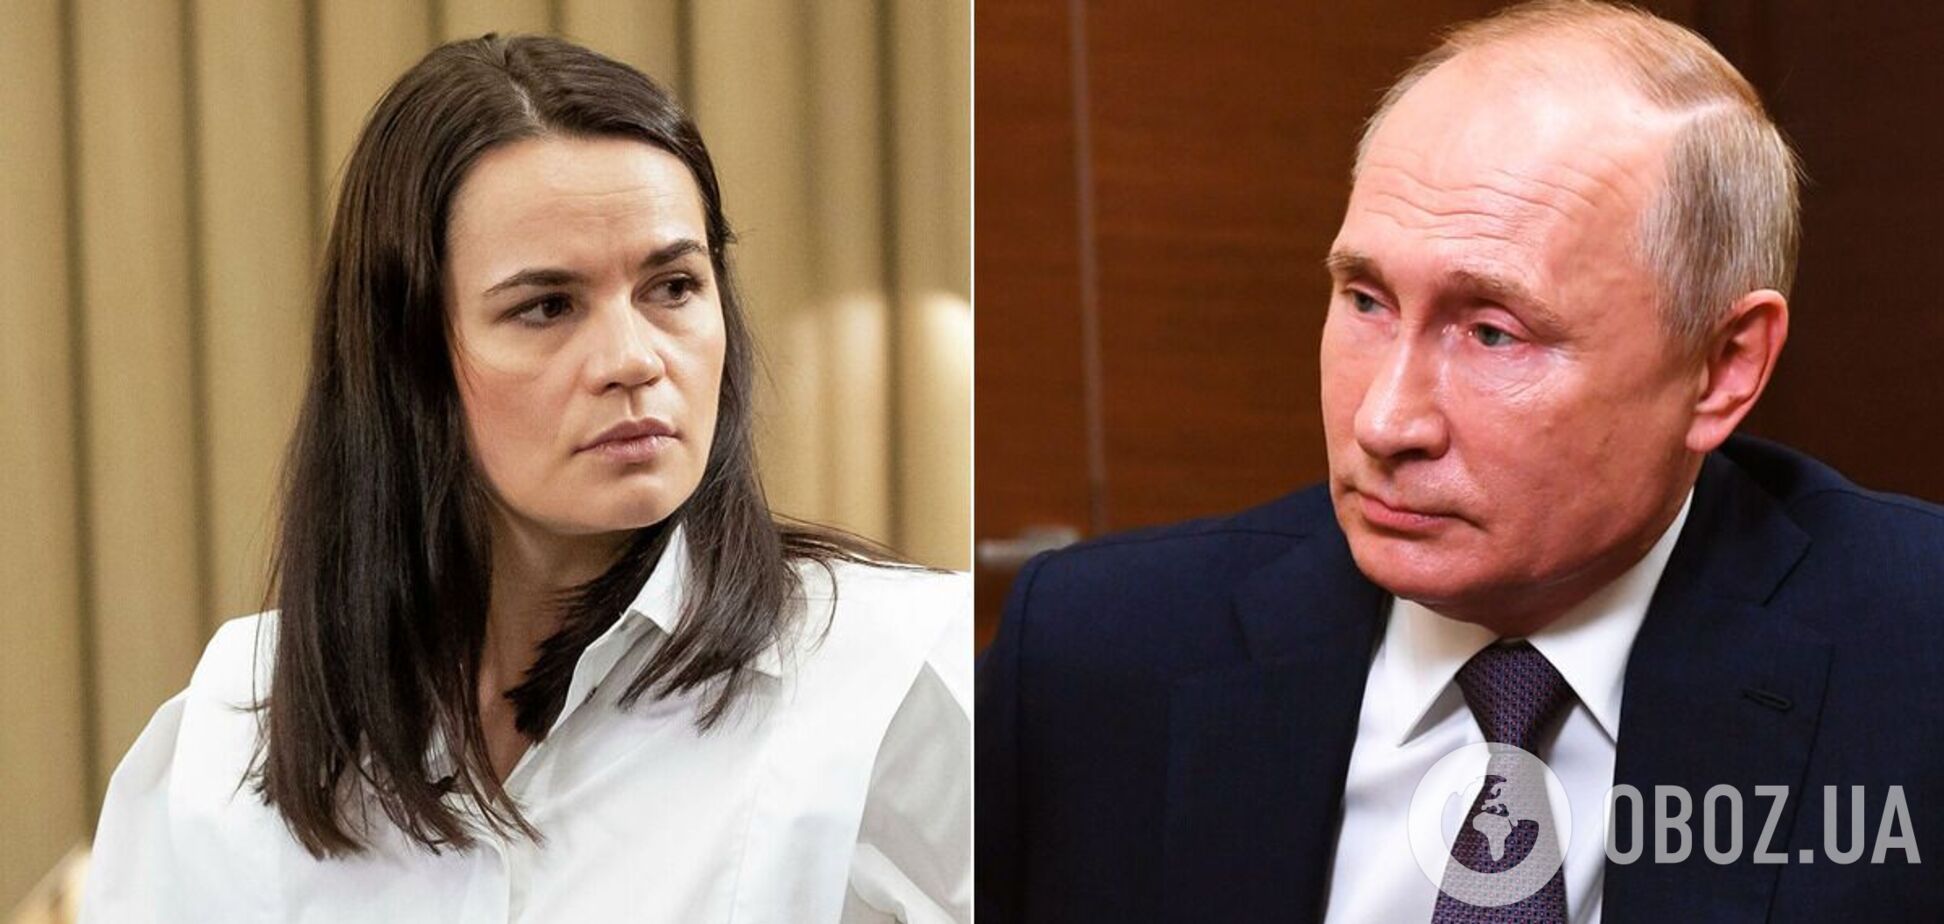 Тихановская выразила желание поговорить с Путиным